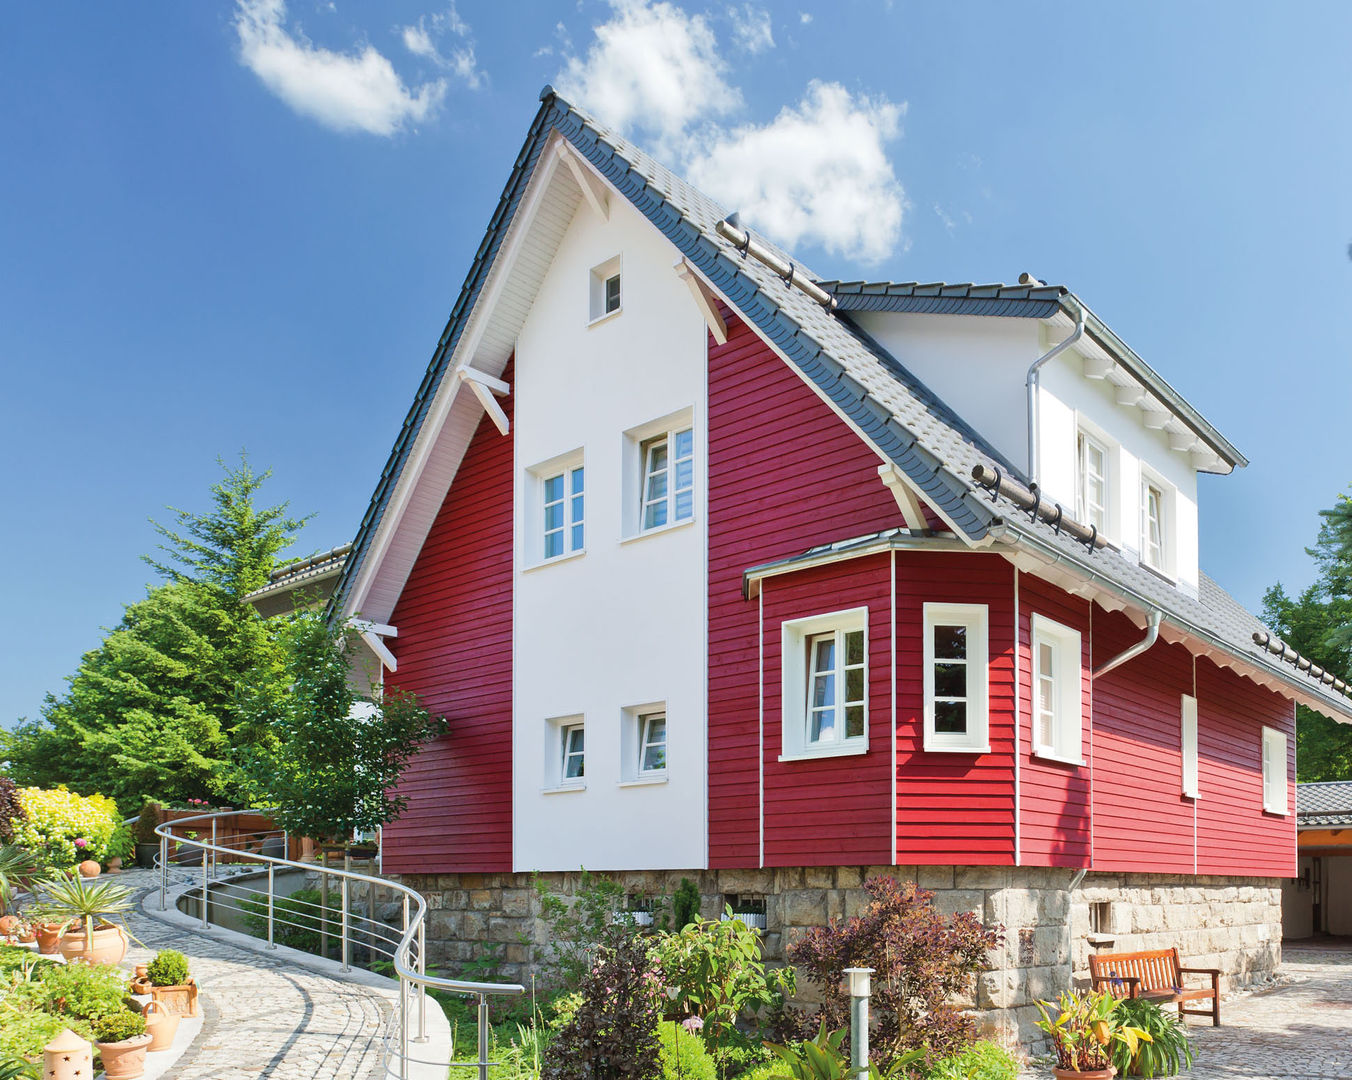 Dauerhaft schöne Fassadenprofile mit deckenden Holzfarben , MOCOPINUS GmbH & Co. KG MOCOPINUS GmbH & Co. KG Country style house